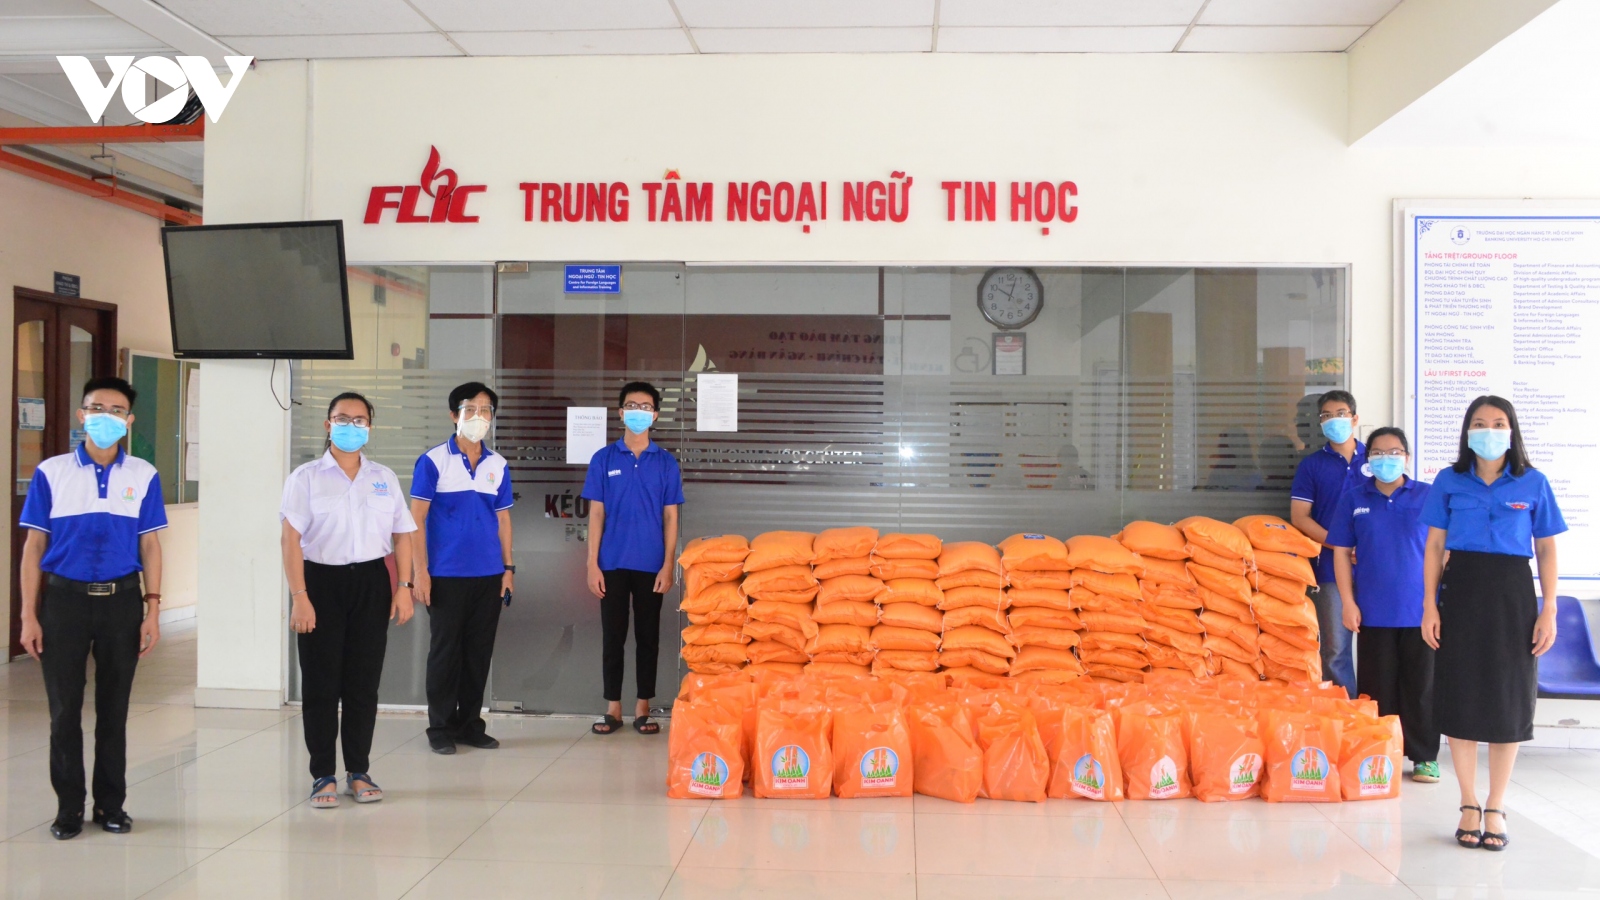 Quỹ từ thiện Kim Oanh tặng 180 tấn gạo cho người dân vùng dịch